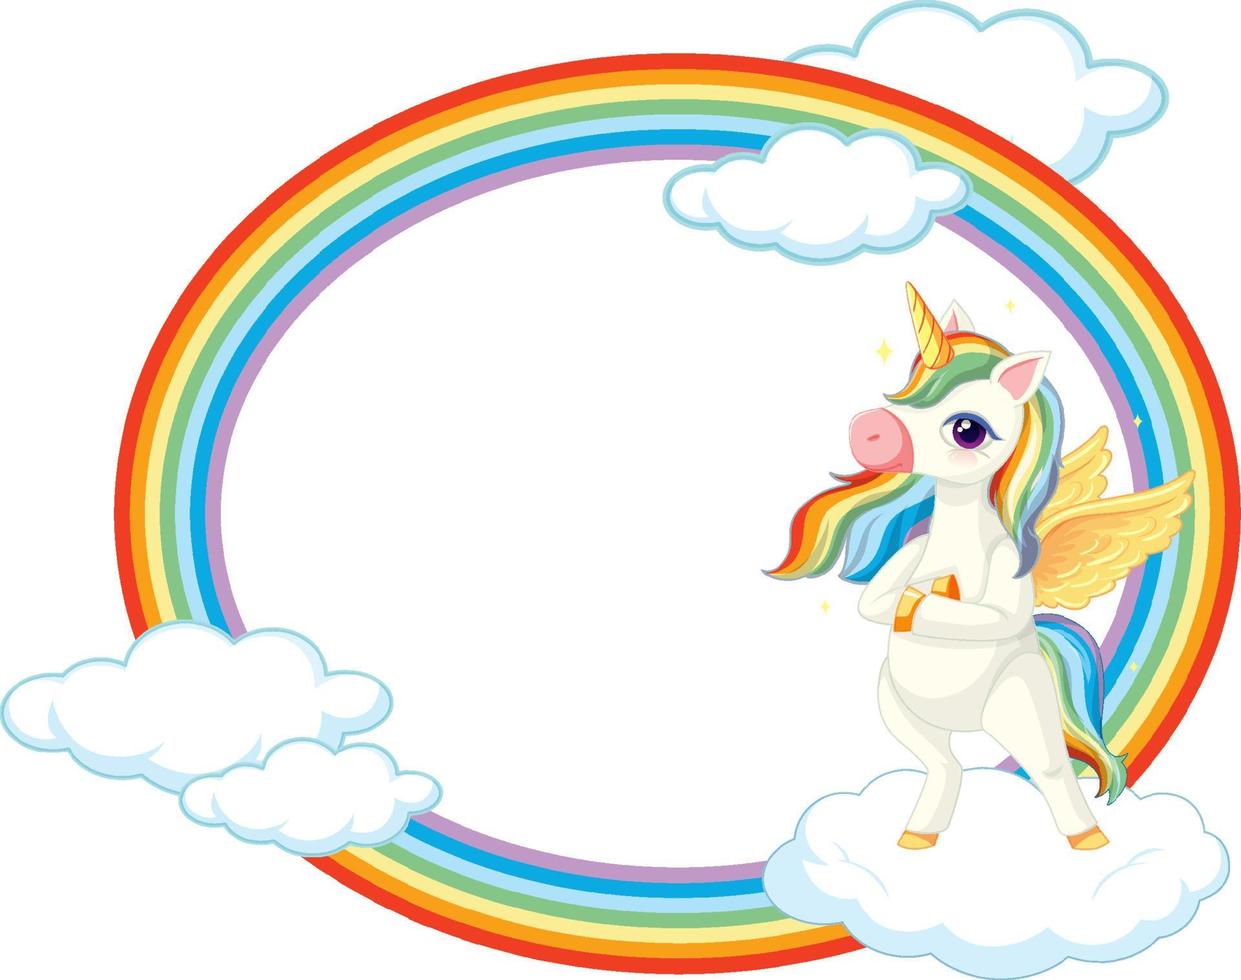 moldura de arco-íris com personagem de desenho animado de unicórnio fofo vetor